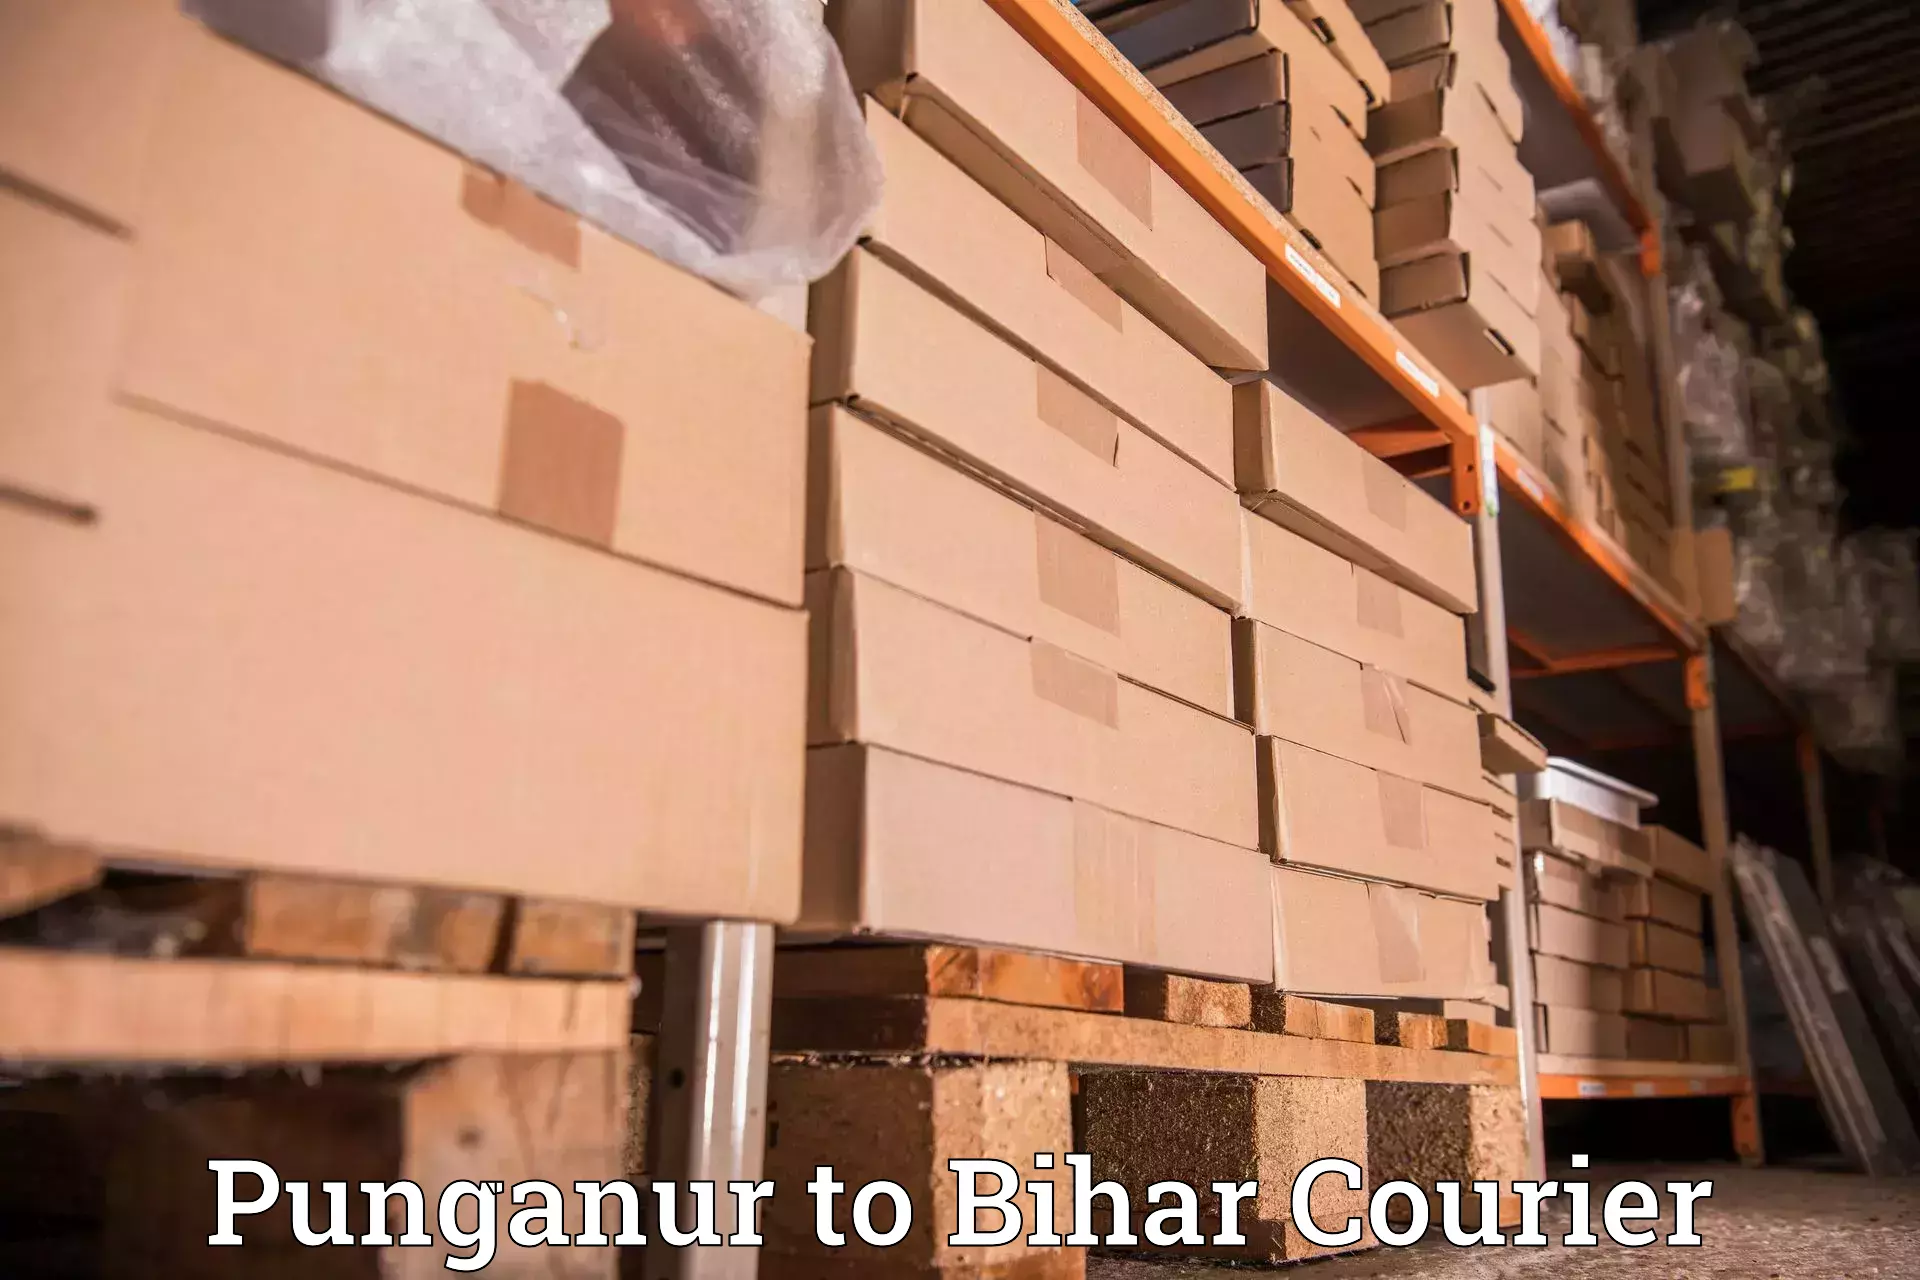 Digital courier platforms Punganur to Sultanganj